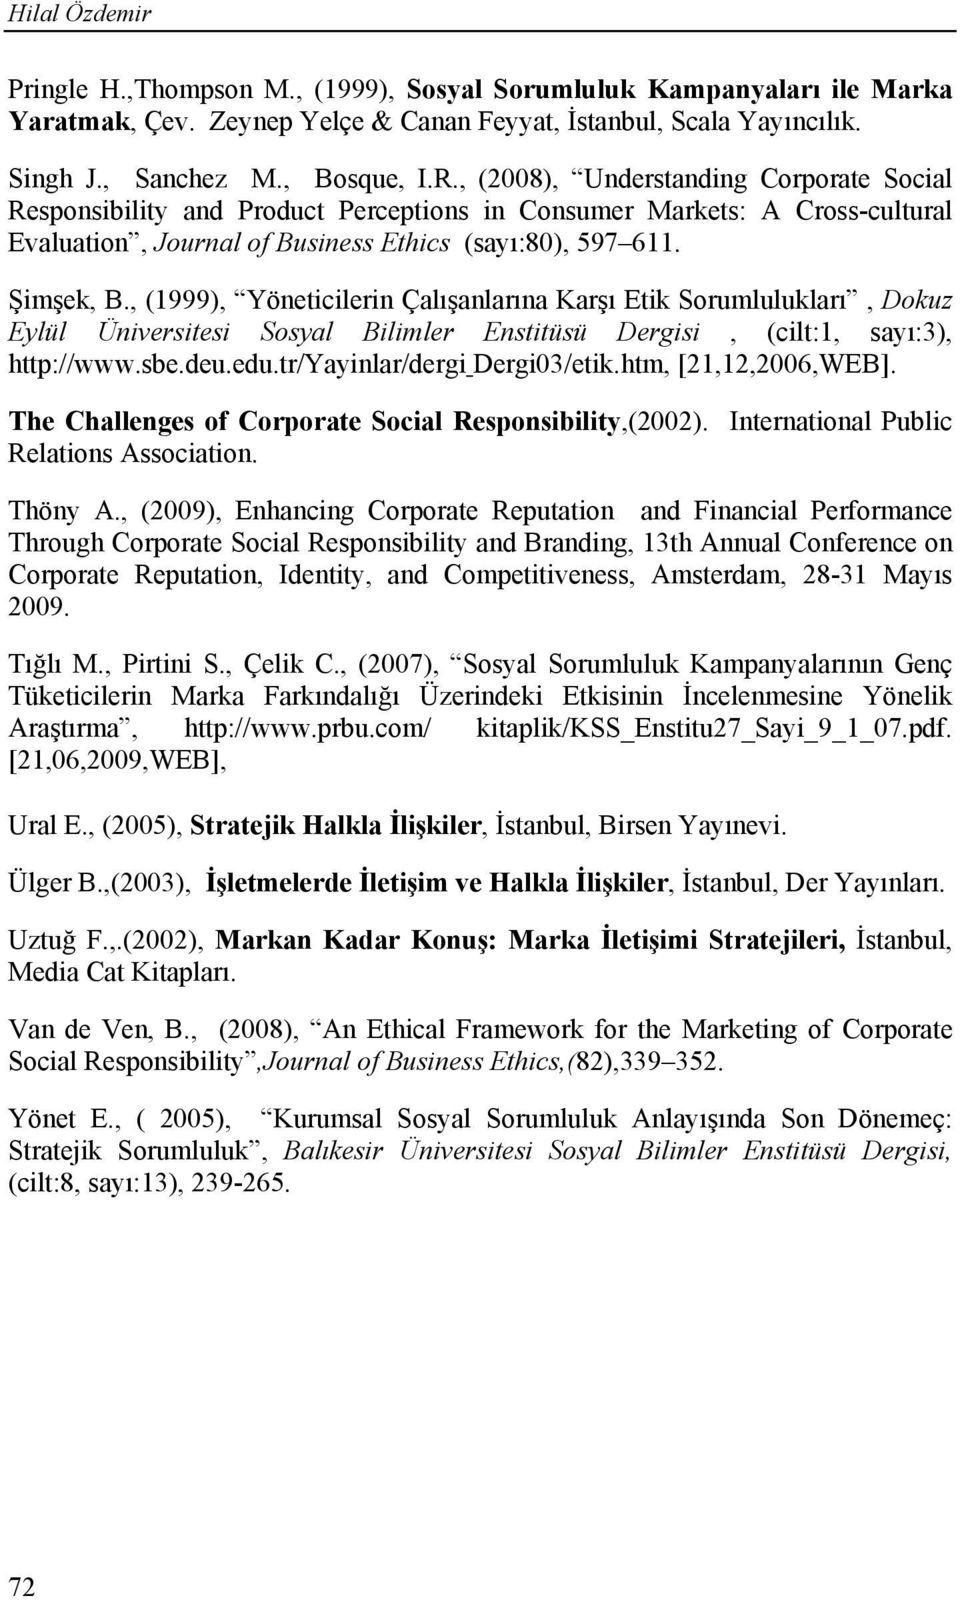 , (1999), Yöneticilerin Çalışanlarına Karşı Etik Sorumlulukları, Dokuz Eylül Üniversitesi Sosyal Bilimler Enstitüsü Dergisi, (cilt:1, sayı:3), http://www.sbe.deu.edu.tr/yayinlar/dergi Dergi03/etik.